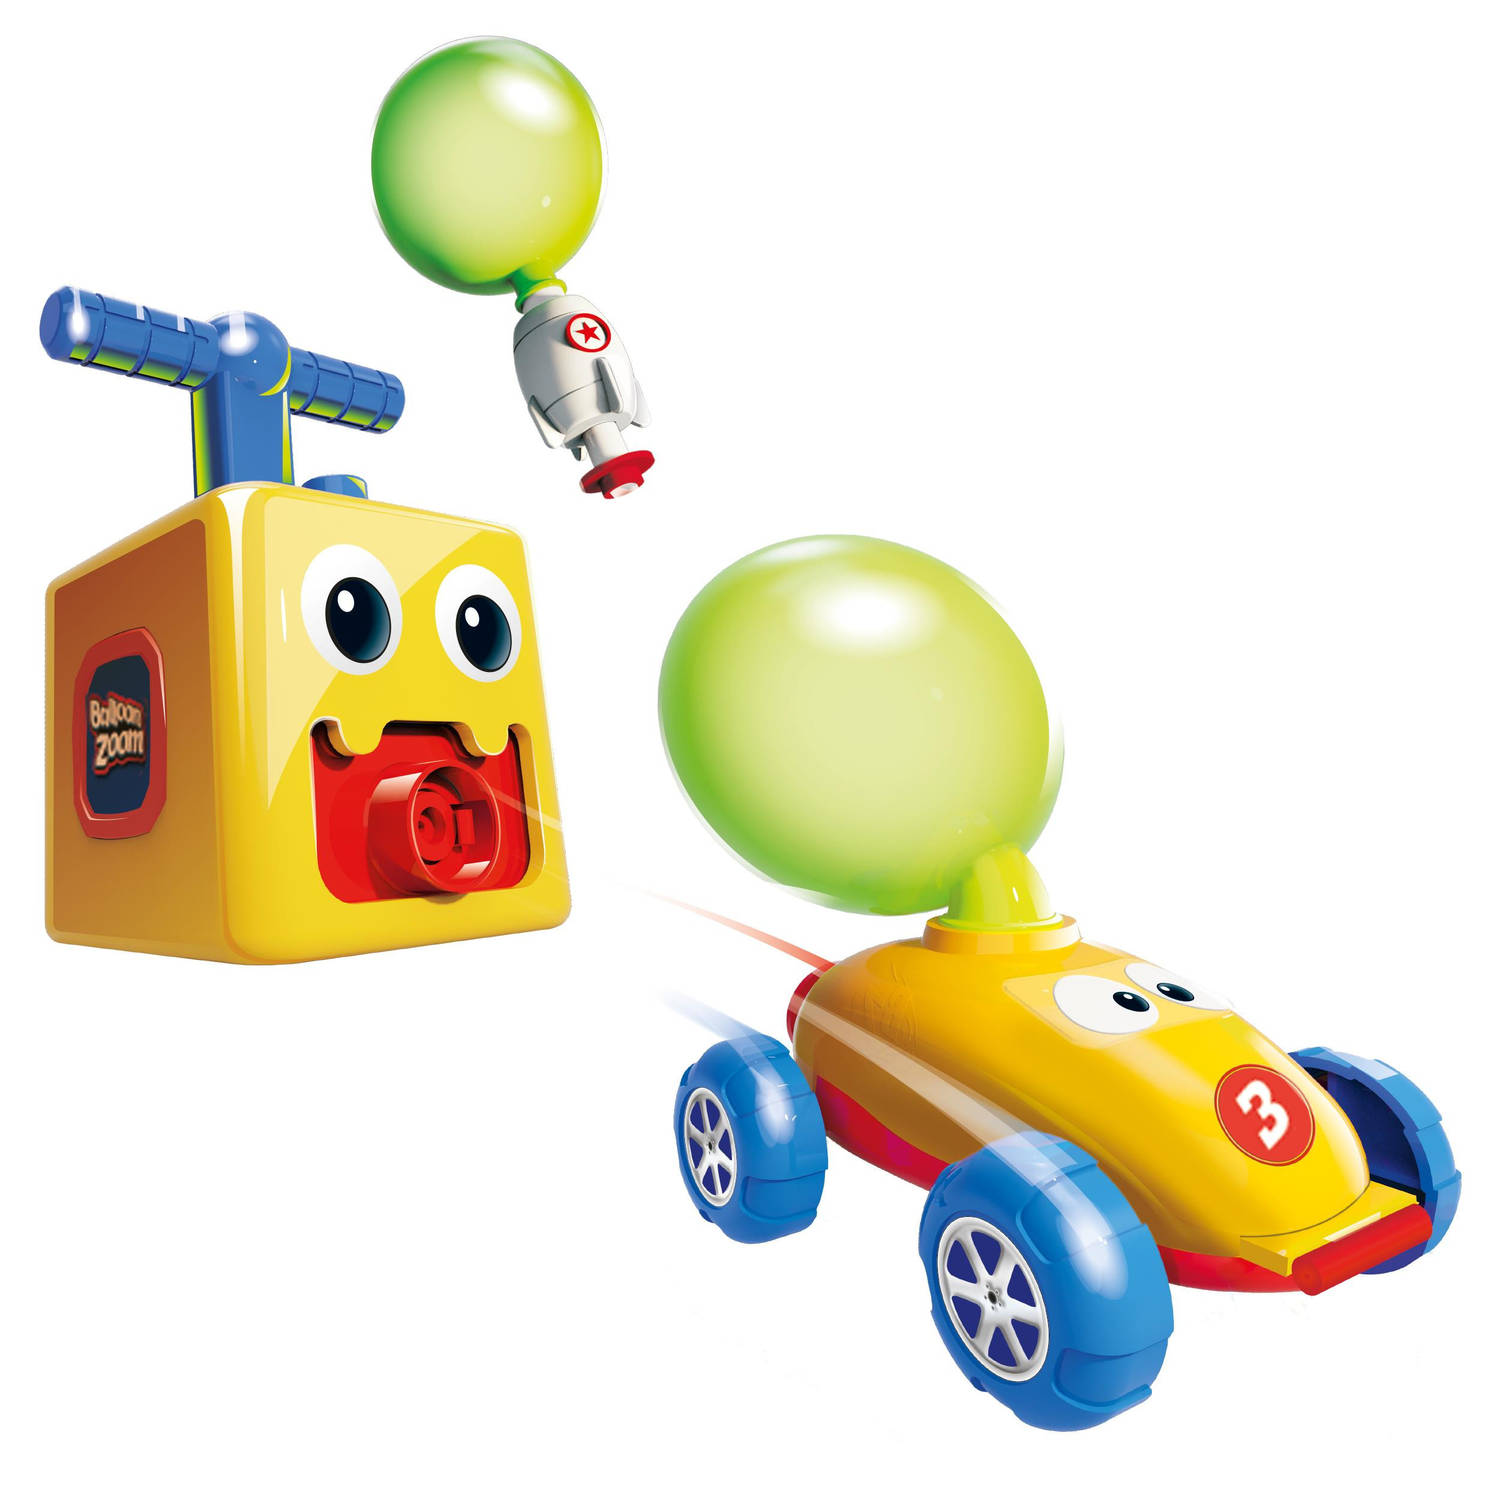 Mediashop Balloon Zoom Ballon-auto-speelgoed voor kinderen vanaf 3 jaar inclusief auto en raketmodus